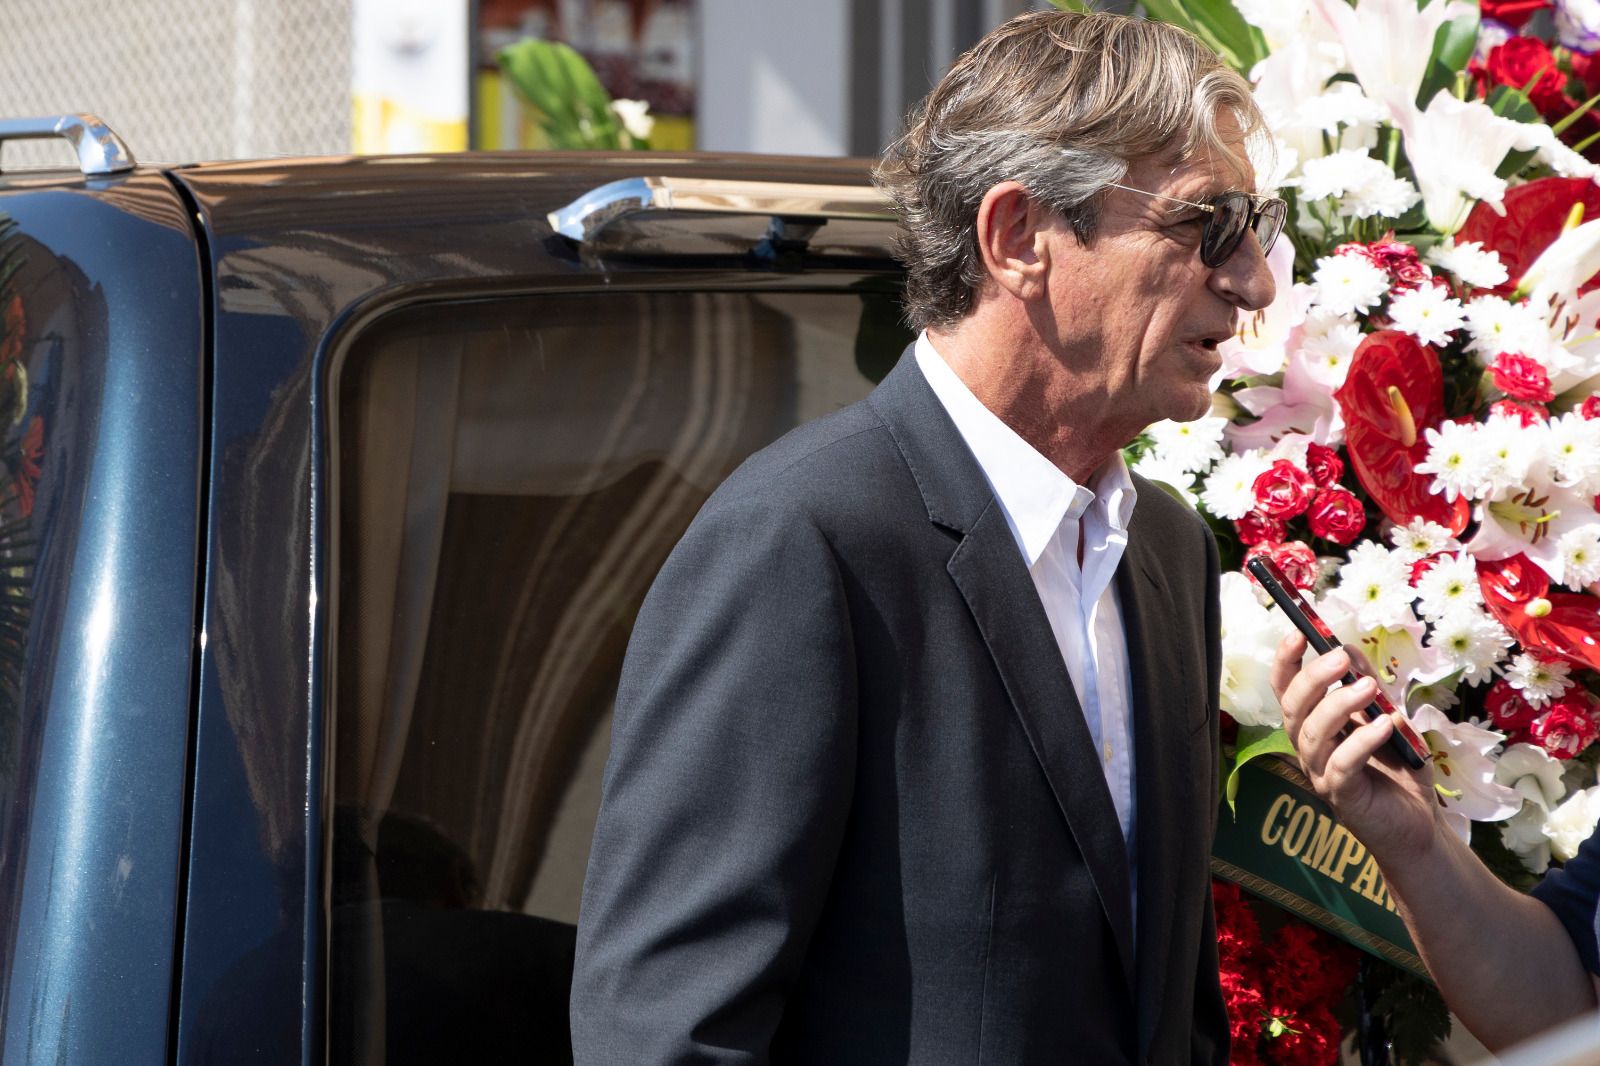 El funeral de Roberto Gil en Riba-roja